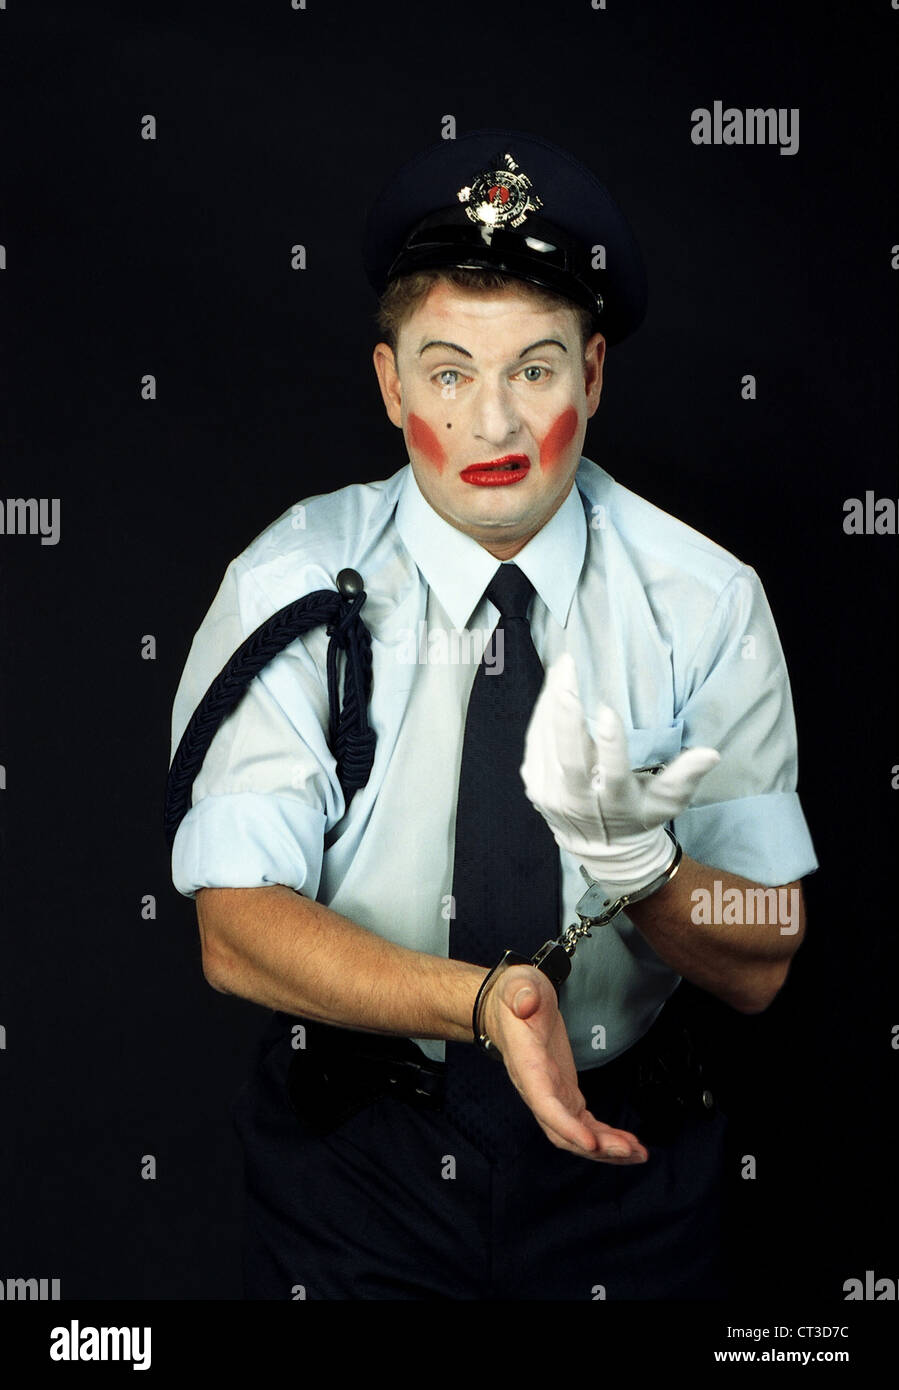 Berlin, un clown dans un uniforme de la police Banque D'Images